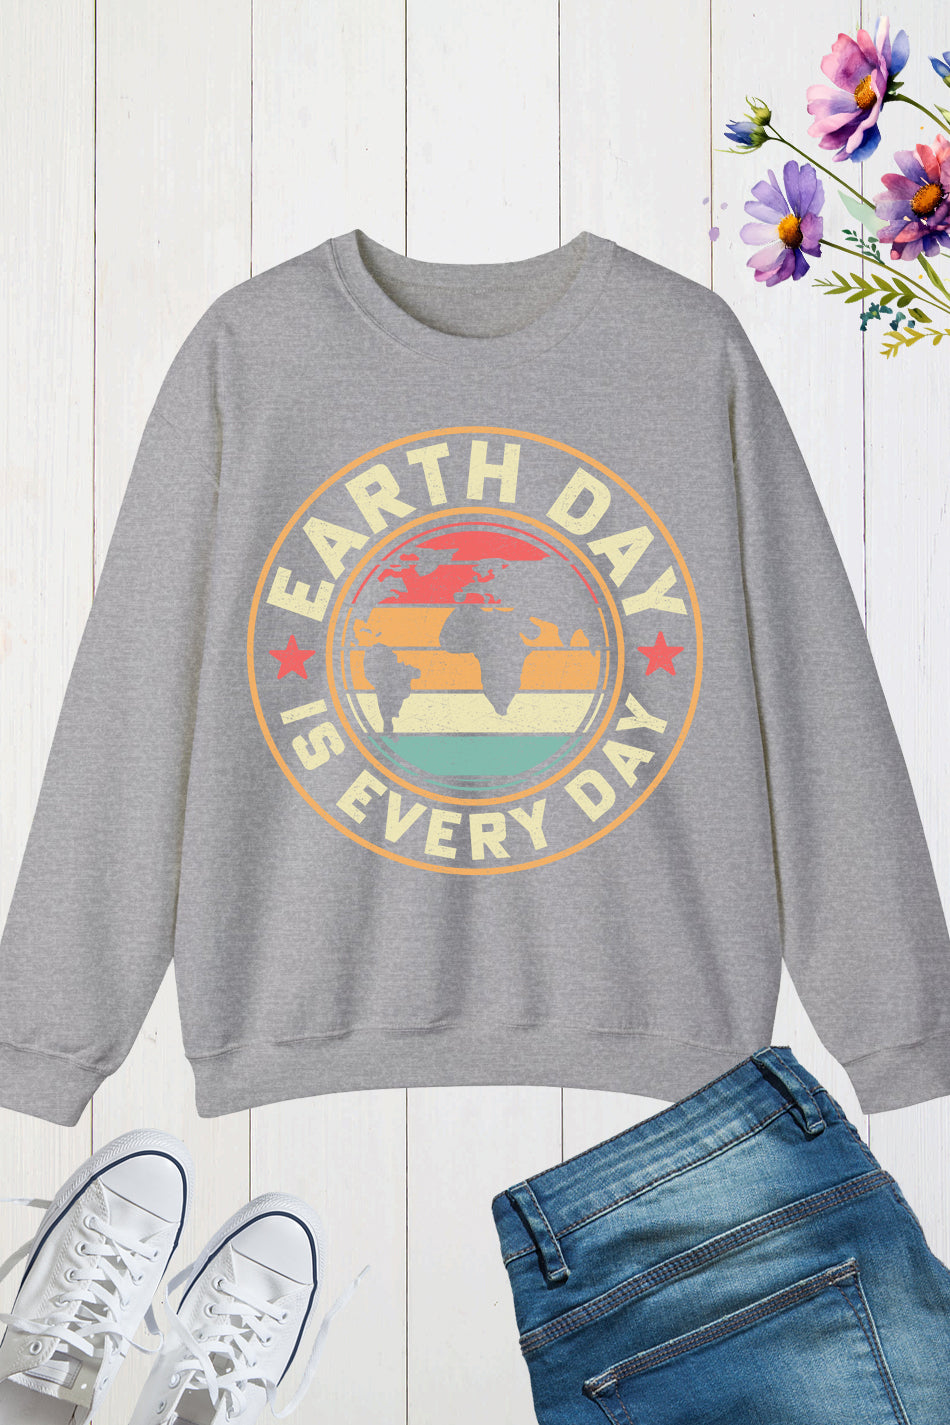 Earth Day is Everyday Sweatshirts